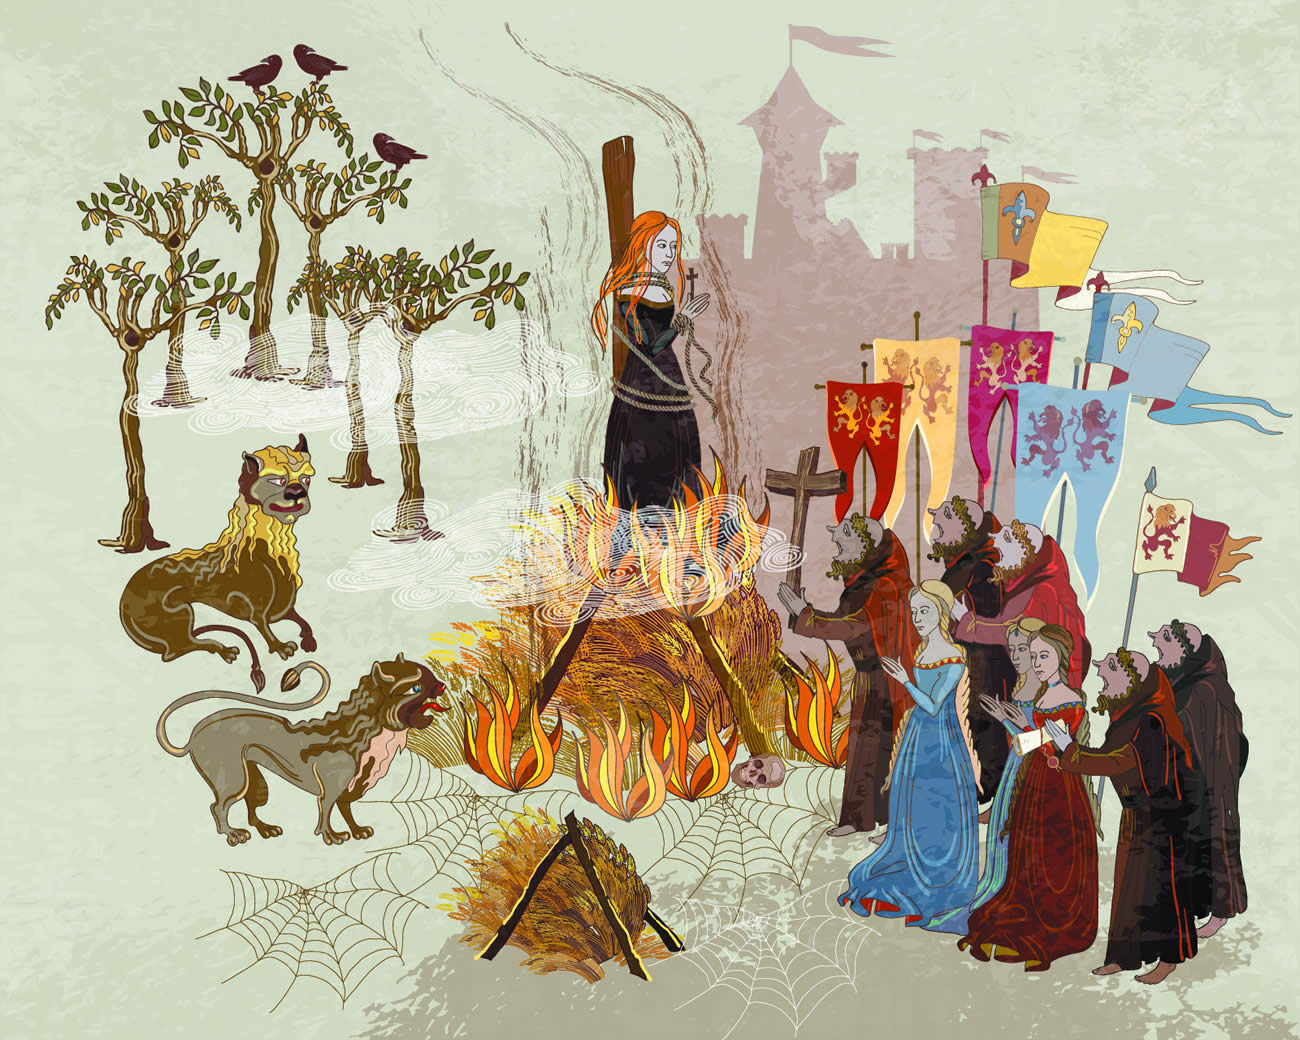 Ilustración representando la cacería de brujas durante la Inquisición 